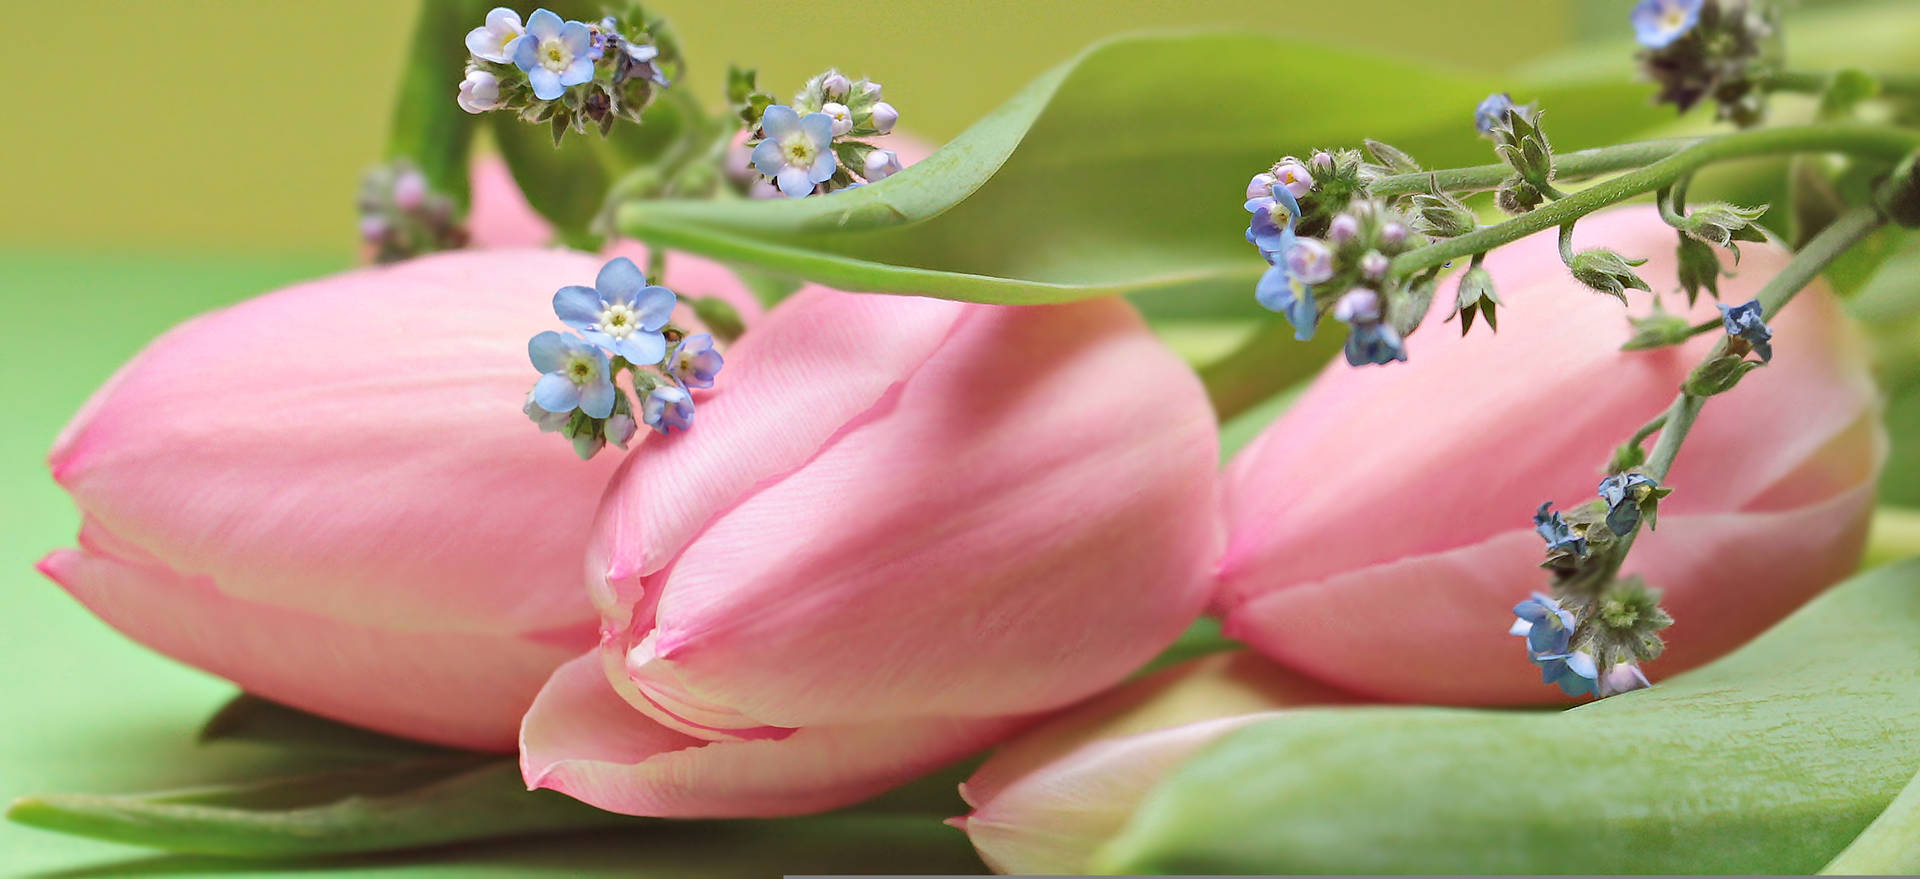 Tulipanesde Color Rosa Con Flores Azules Fondo de pantalla